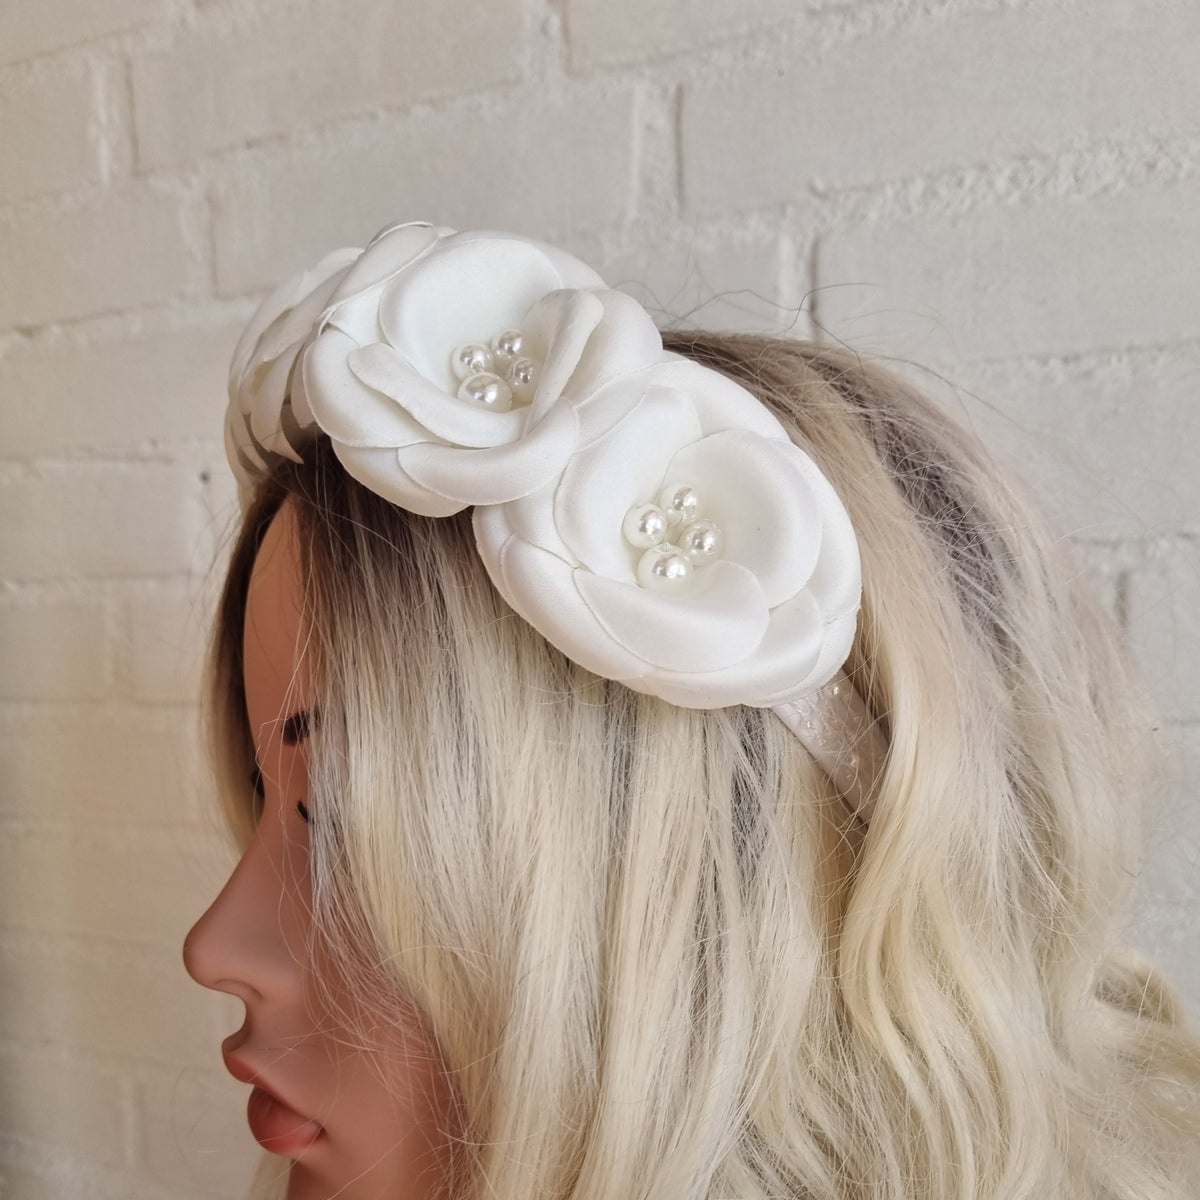 Fantastisk hårbøjle - Hårpynt med blomster og perler til bryllup, konfirmation og fest